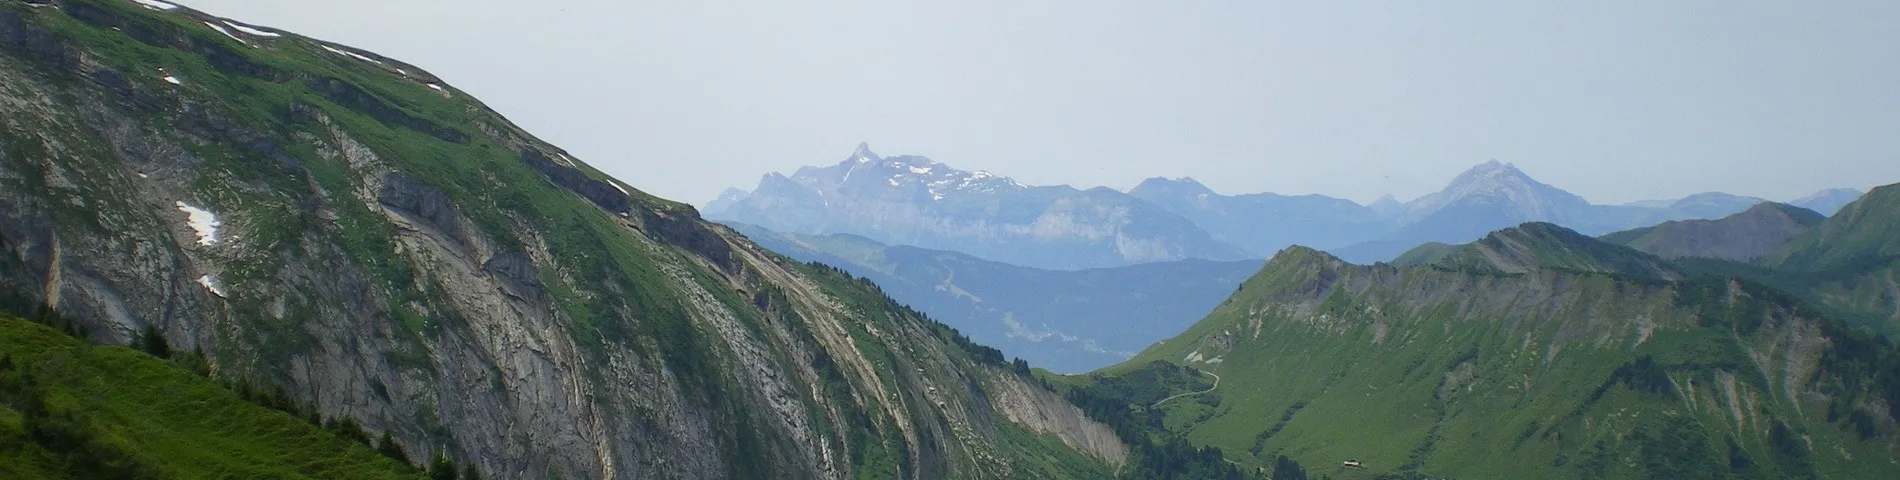 Morzine (Alpen) - 